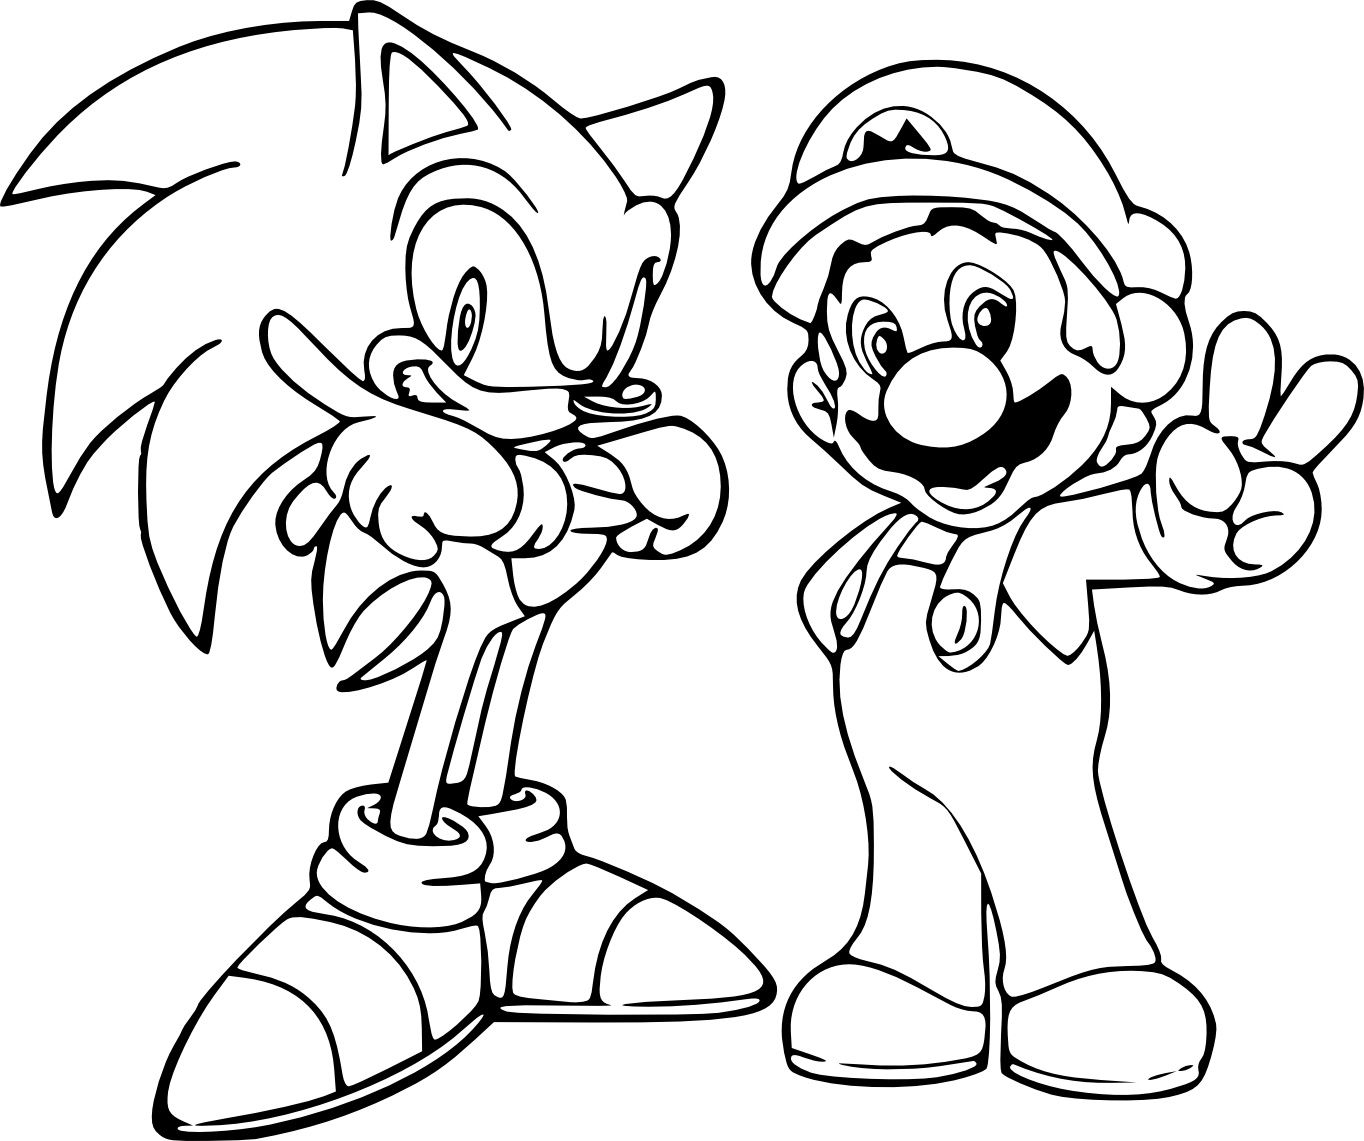 Coloriage De Sonic Et Mario À Imprimer En 2020 | Coloriage encequiconcerne Coloriage Mario Et Luigi A Imprimer Gratuit